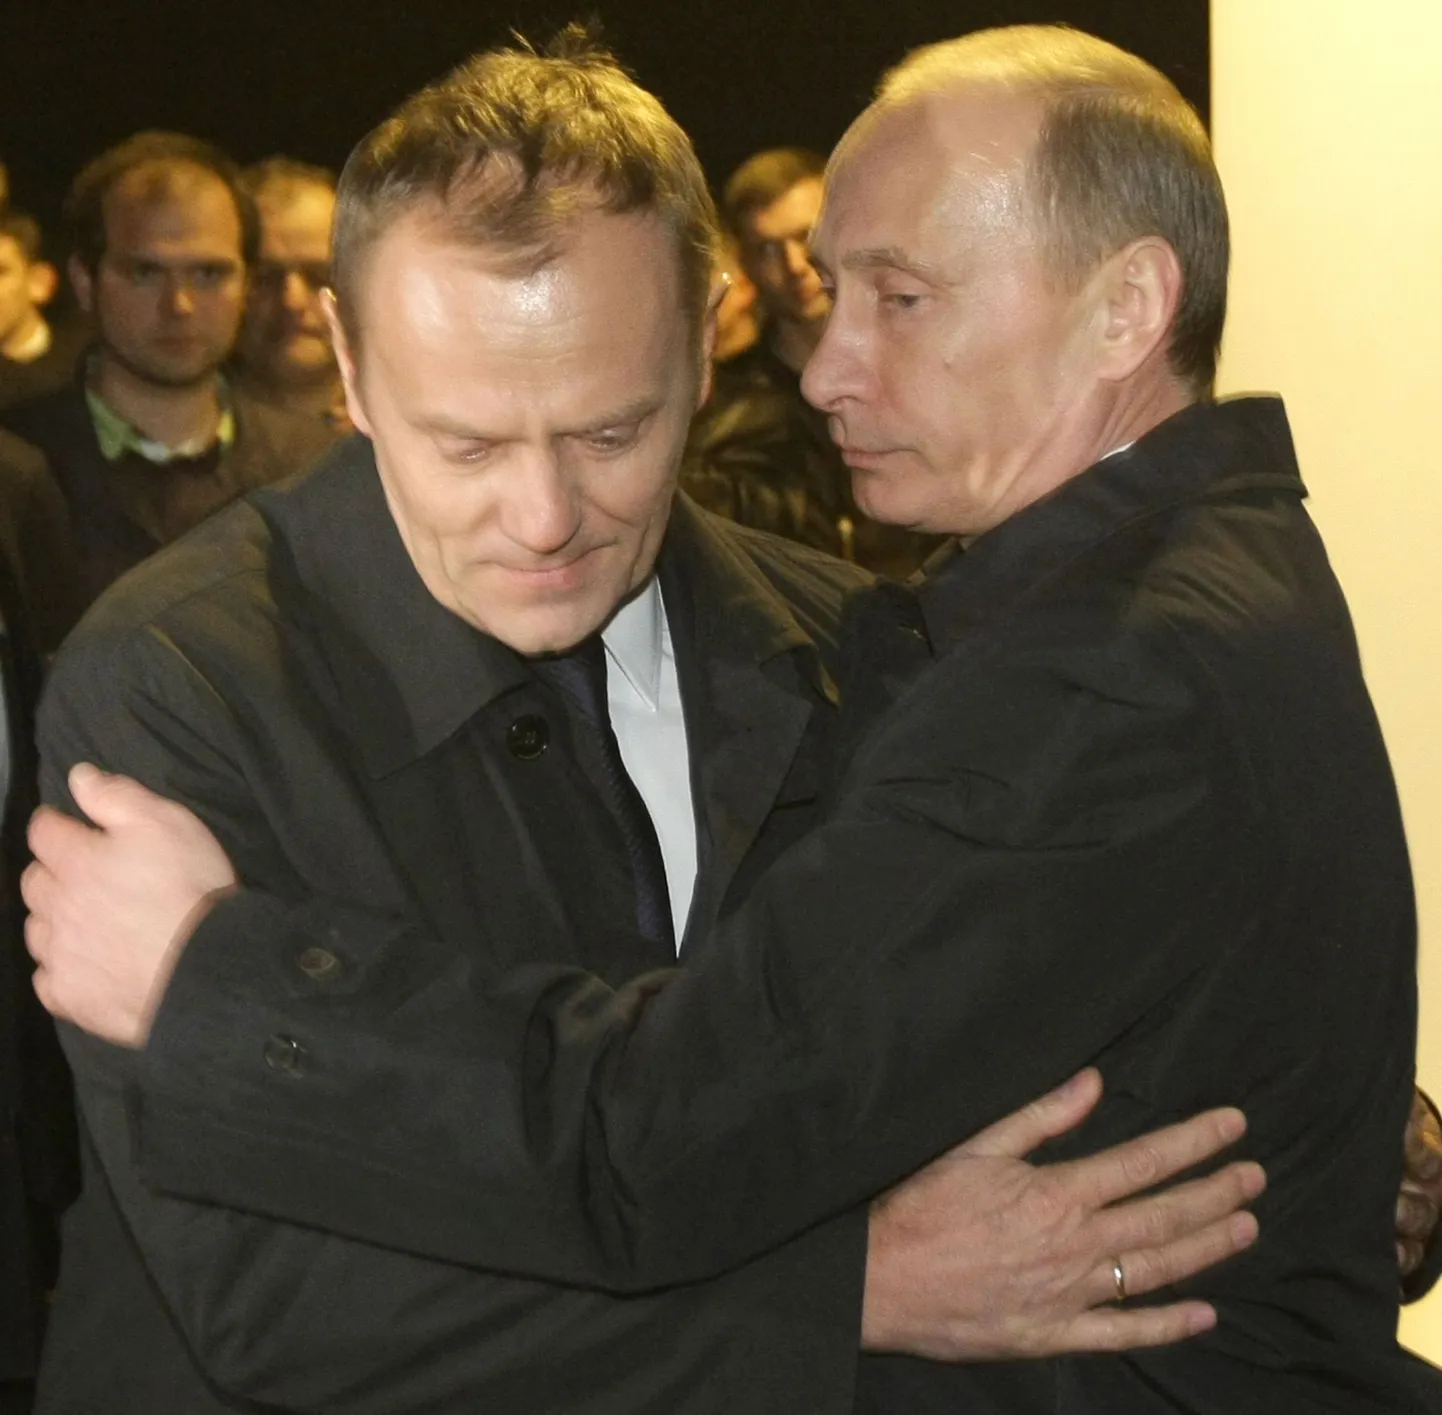 Владимир Путин обнял Дональда Туска во время посещения места катастрофы.